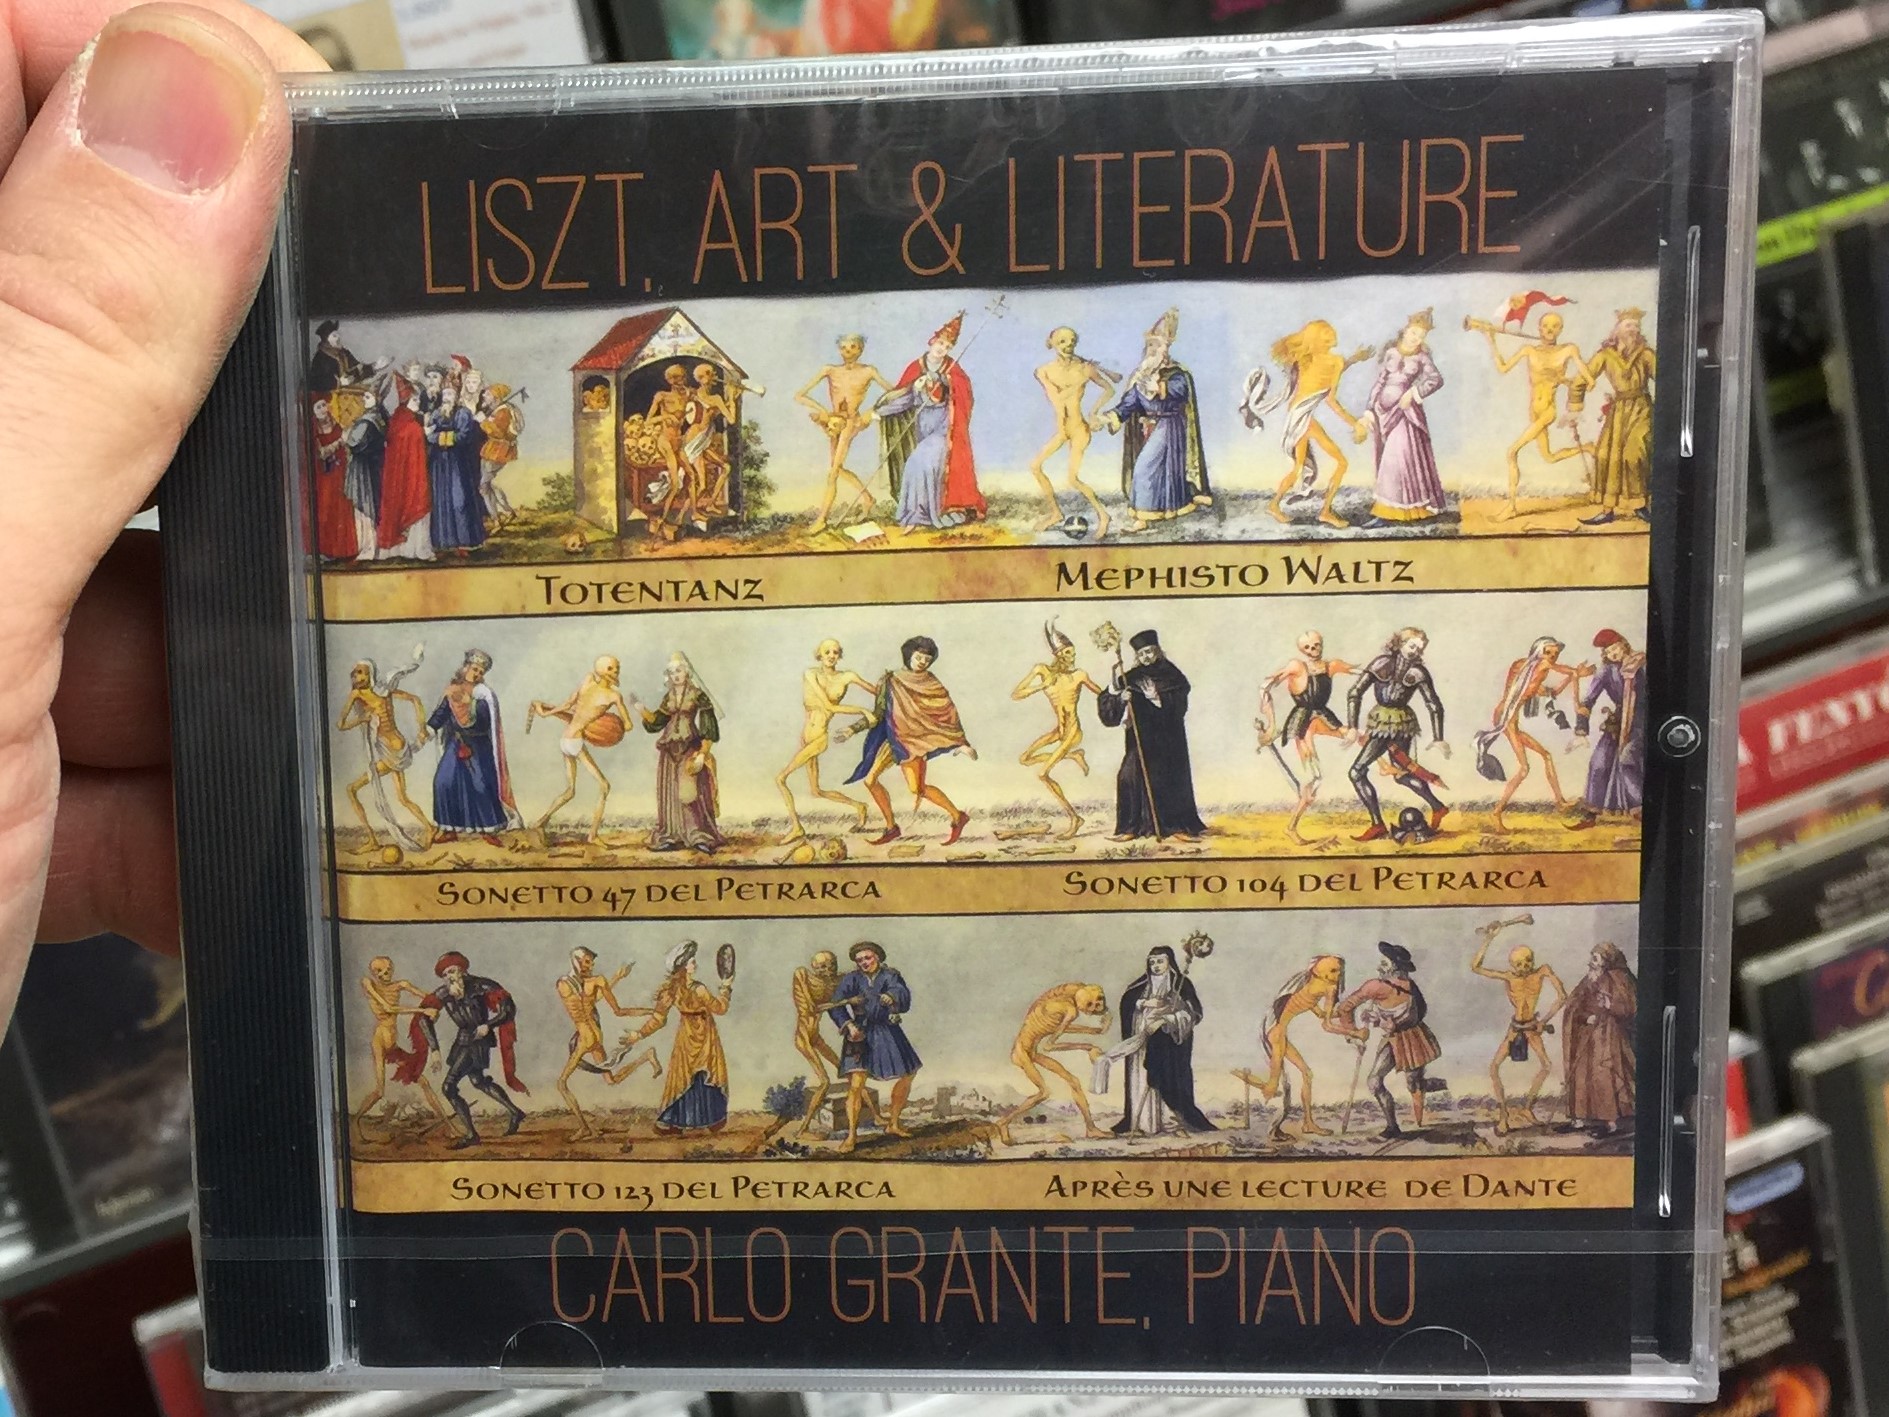 liszt-art-literature-totentanz-mephisto-waltz-sonetto-47-del-petrarca-sonetto-104-del-petrarca-sonetto-12-del-petrarca-apres-une-lecture-de-dante-carlo-grante-piano-music-arts-progr-1-.jpg